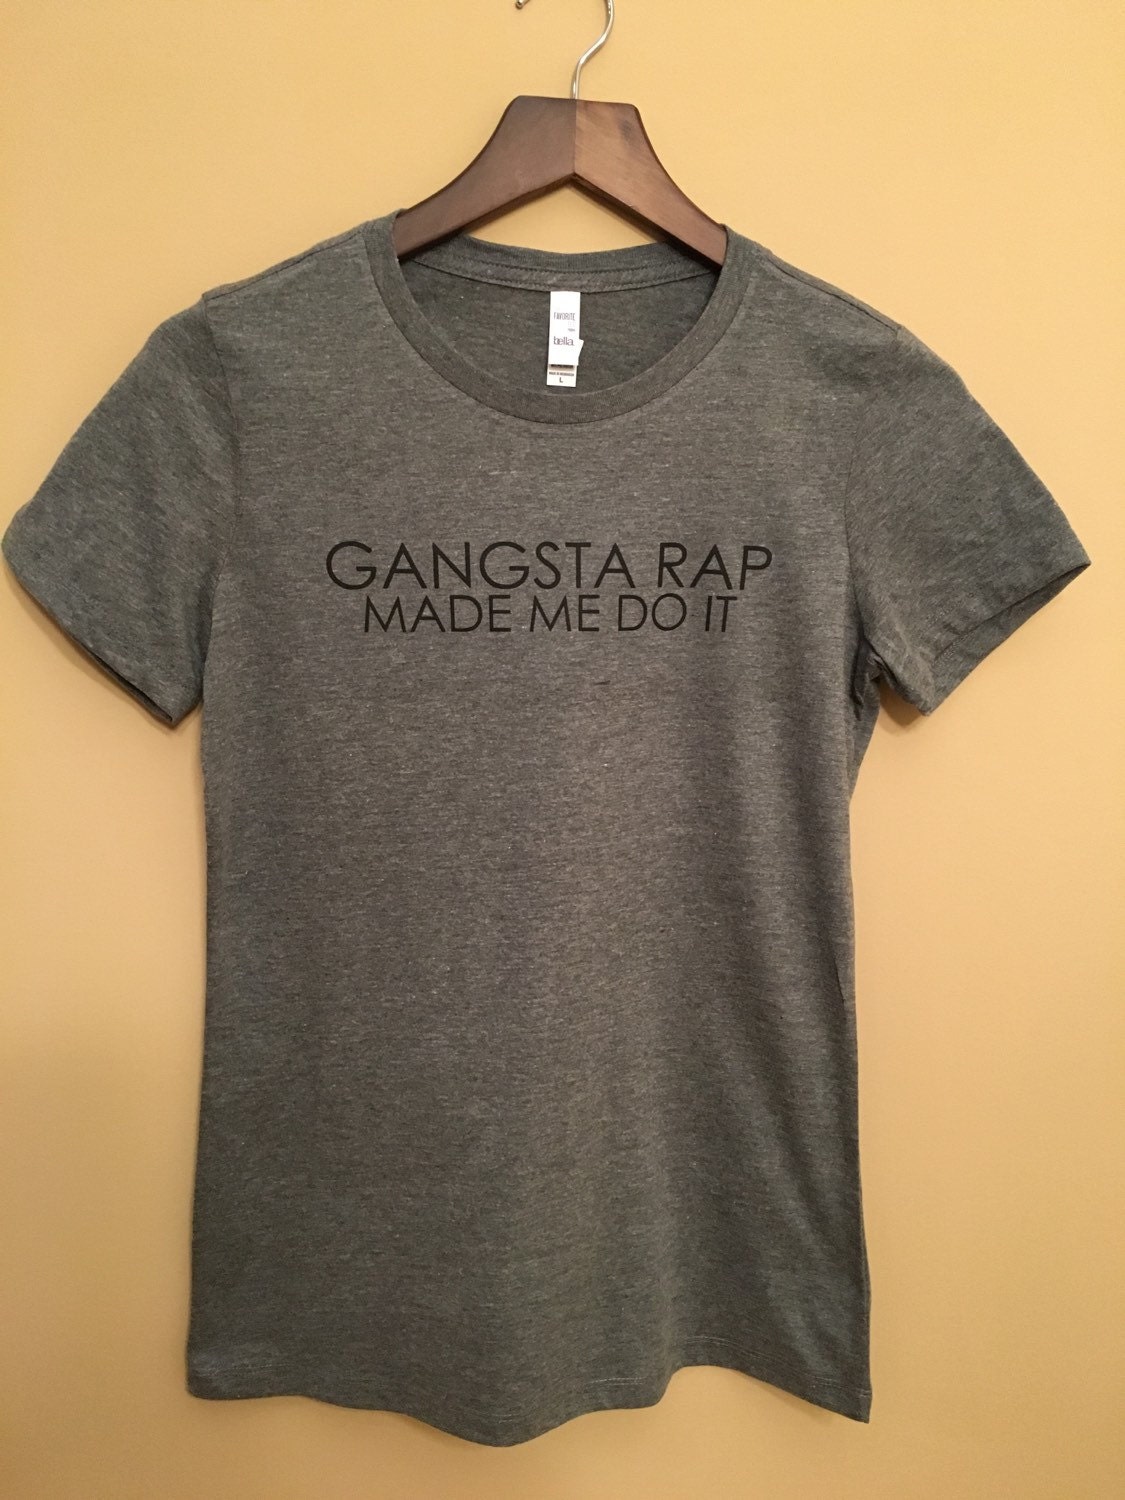 gangsta rap made me do it t shirt